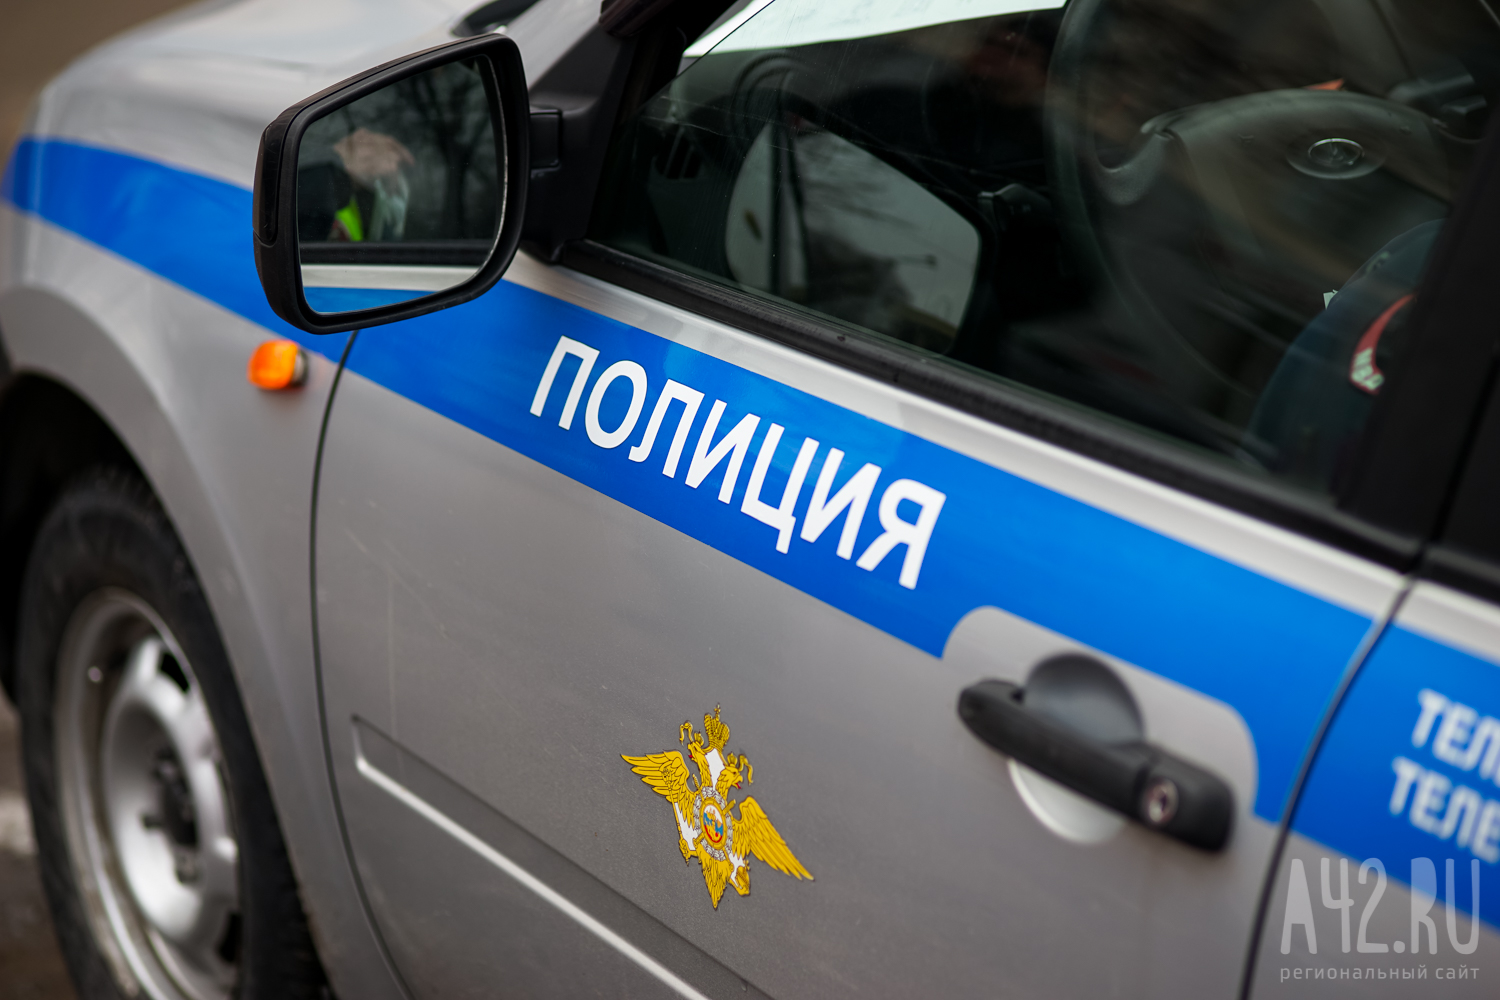 В Санкт-Петербурге задержали семиклассника, угрожавшего продавцу шаурмы пистолетом